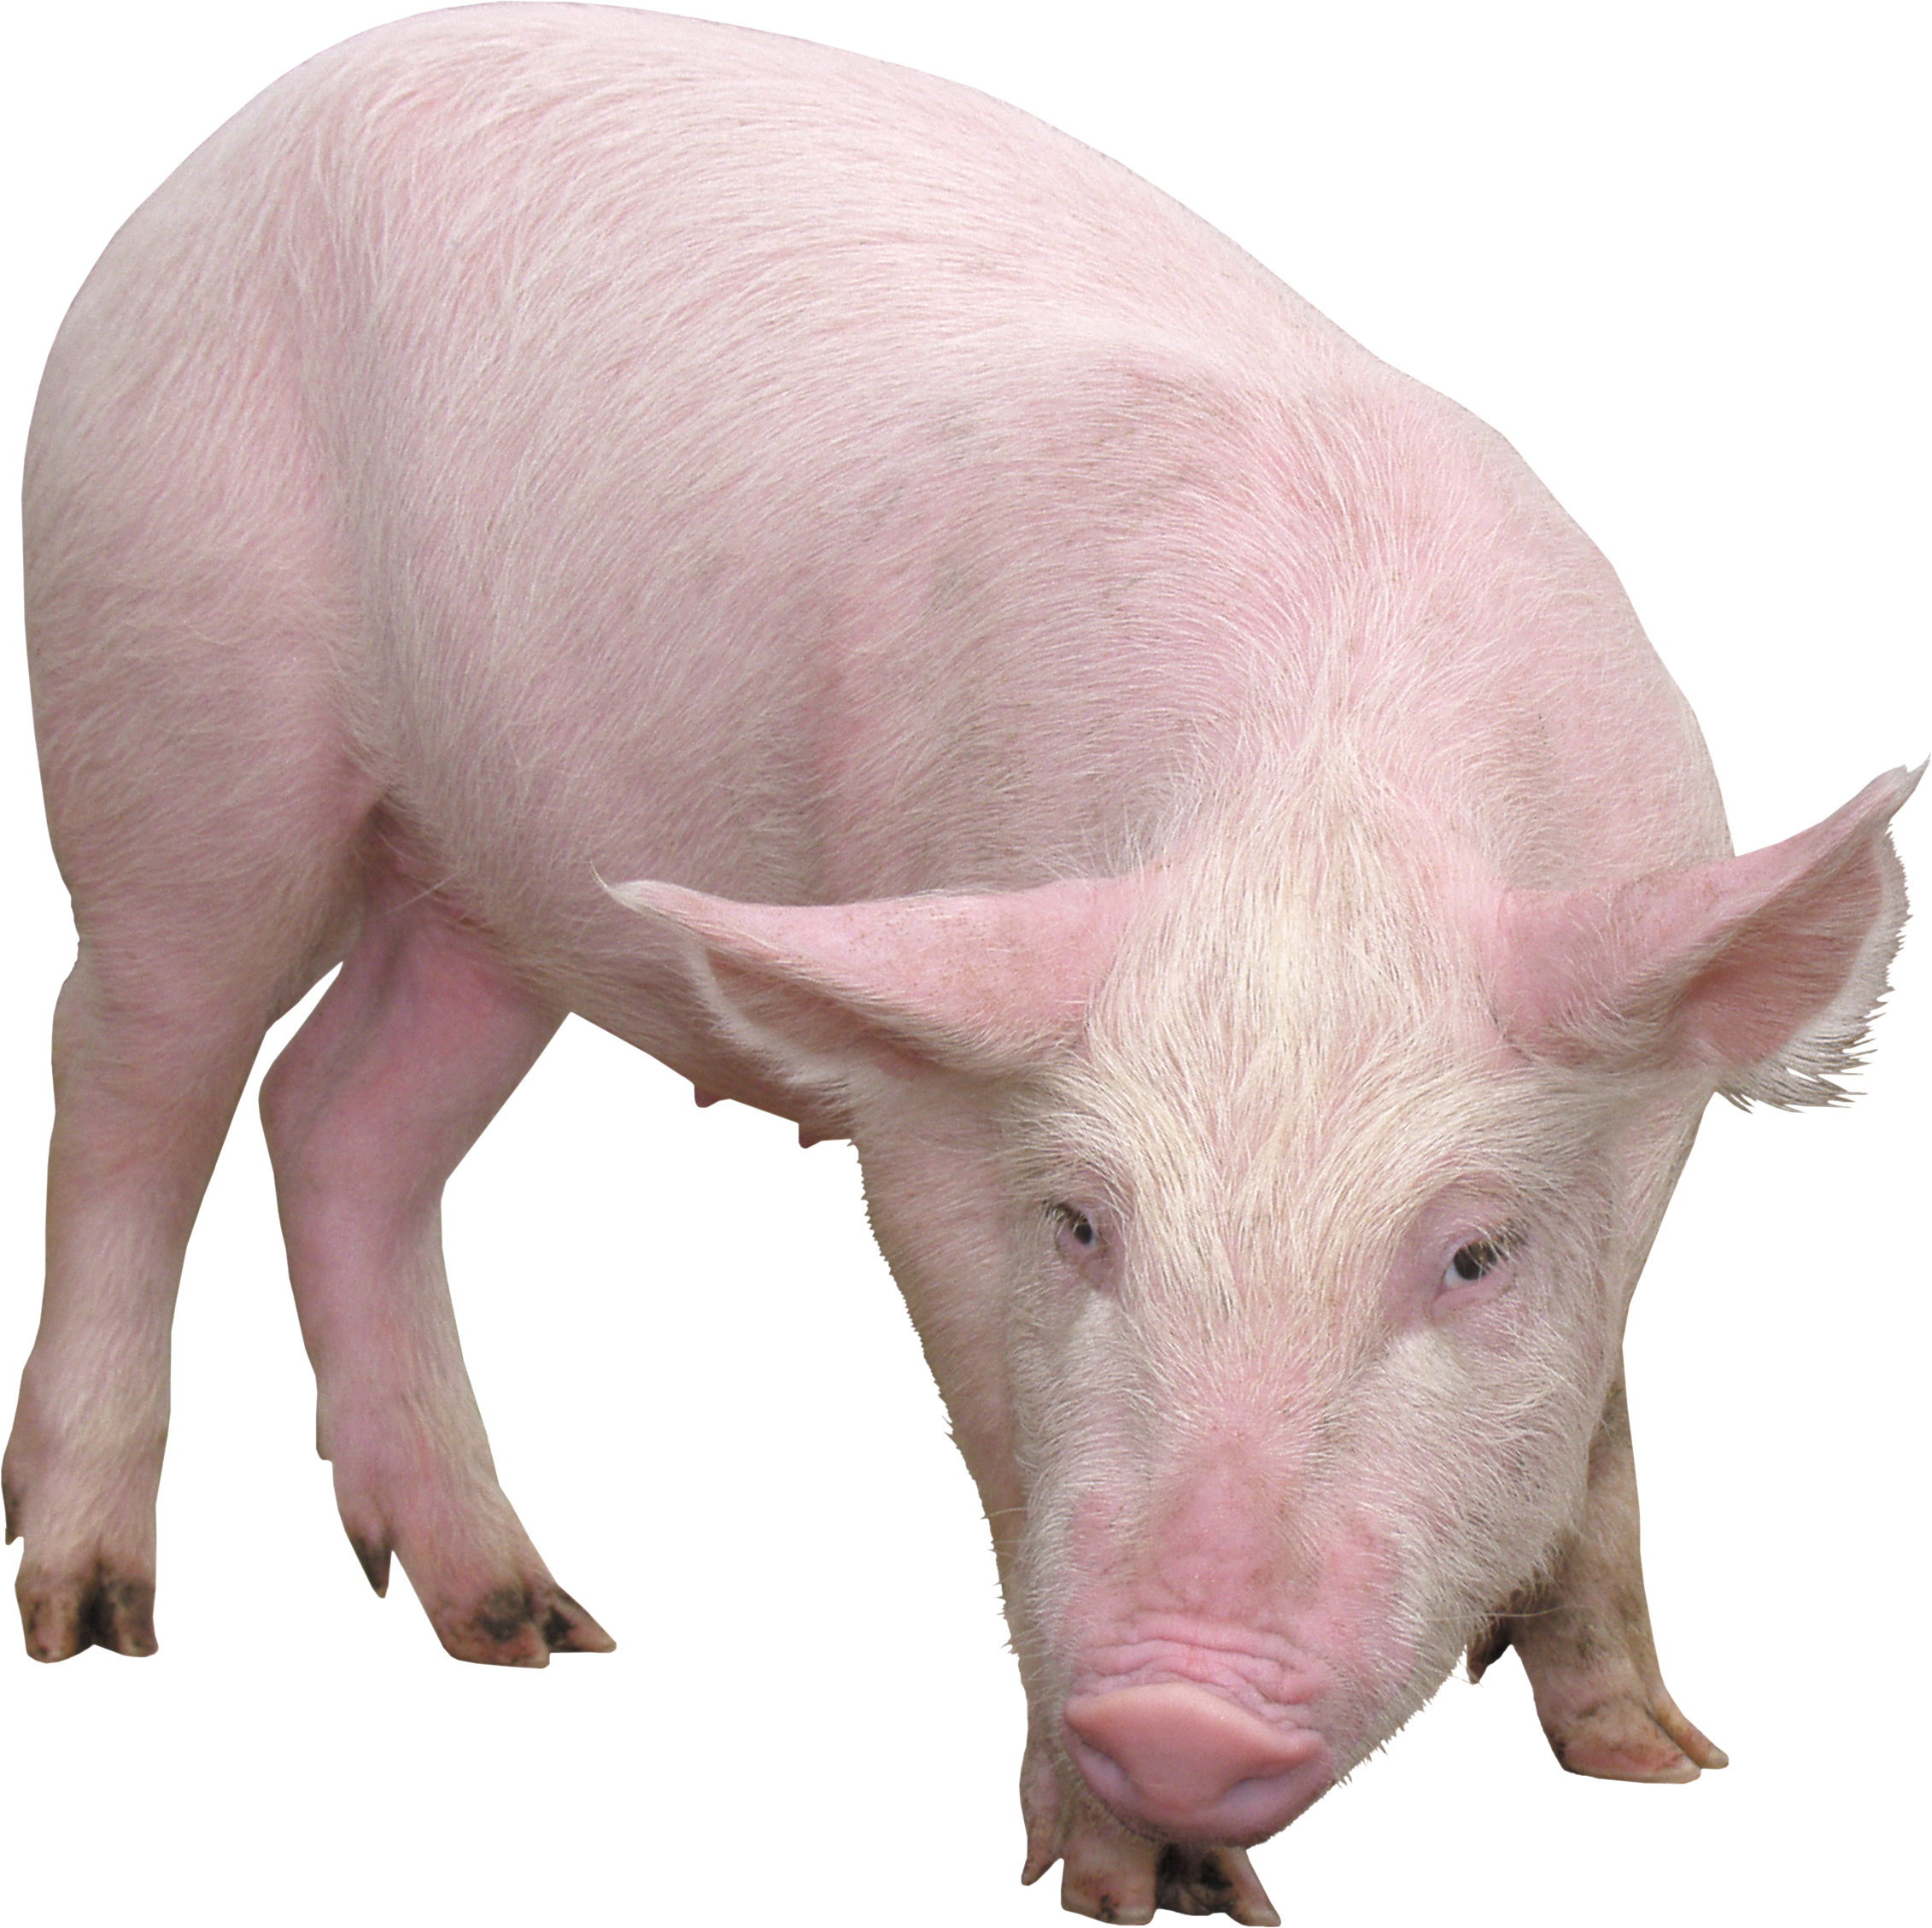 Imagen Transparente de cerdo